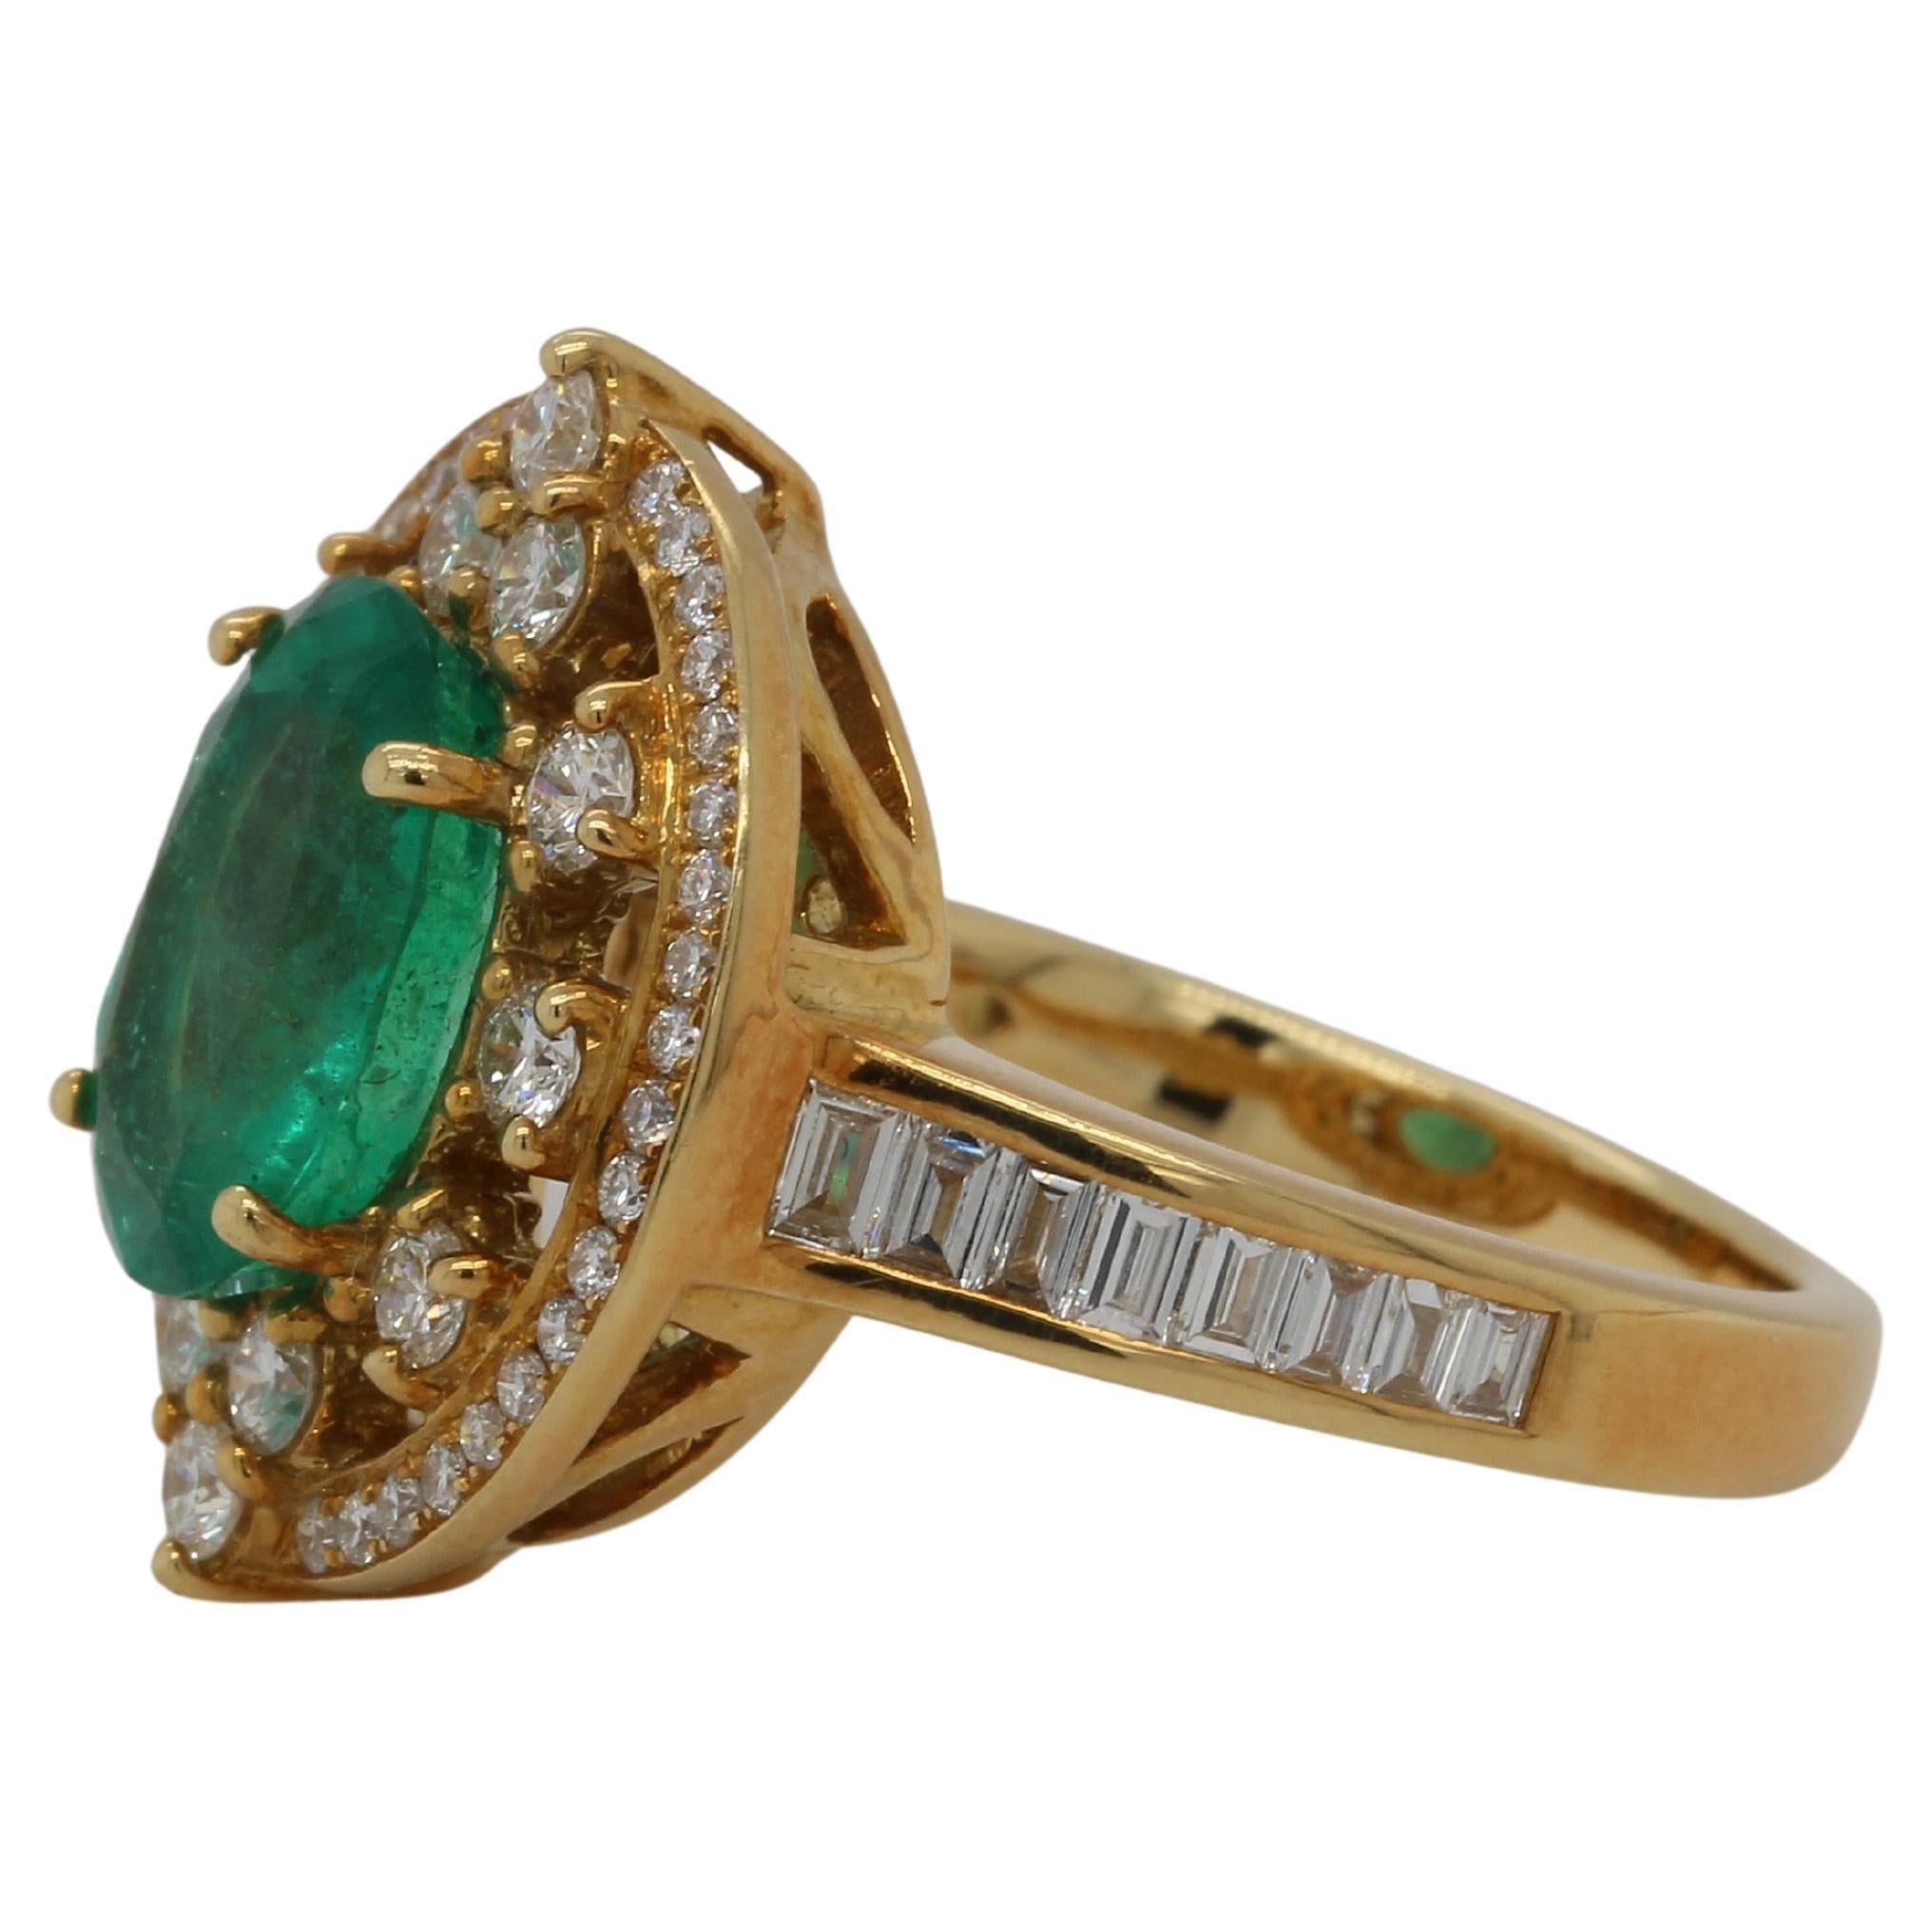 Ein brandneuer Smaragd- und Diamantring aus 18 Karat Gold. Ein ovaler Smaragd von 2,29 Karat ist in diesem Ring gefasst, zu dem auch ein Diamant mit 0,34 Karat in der Spitze und ein runder Diamant von 0,61 Karat gehören. Dieser Ring wiegt 8,58 Gramm